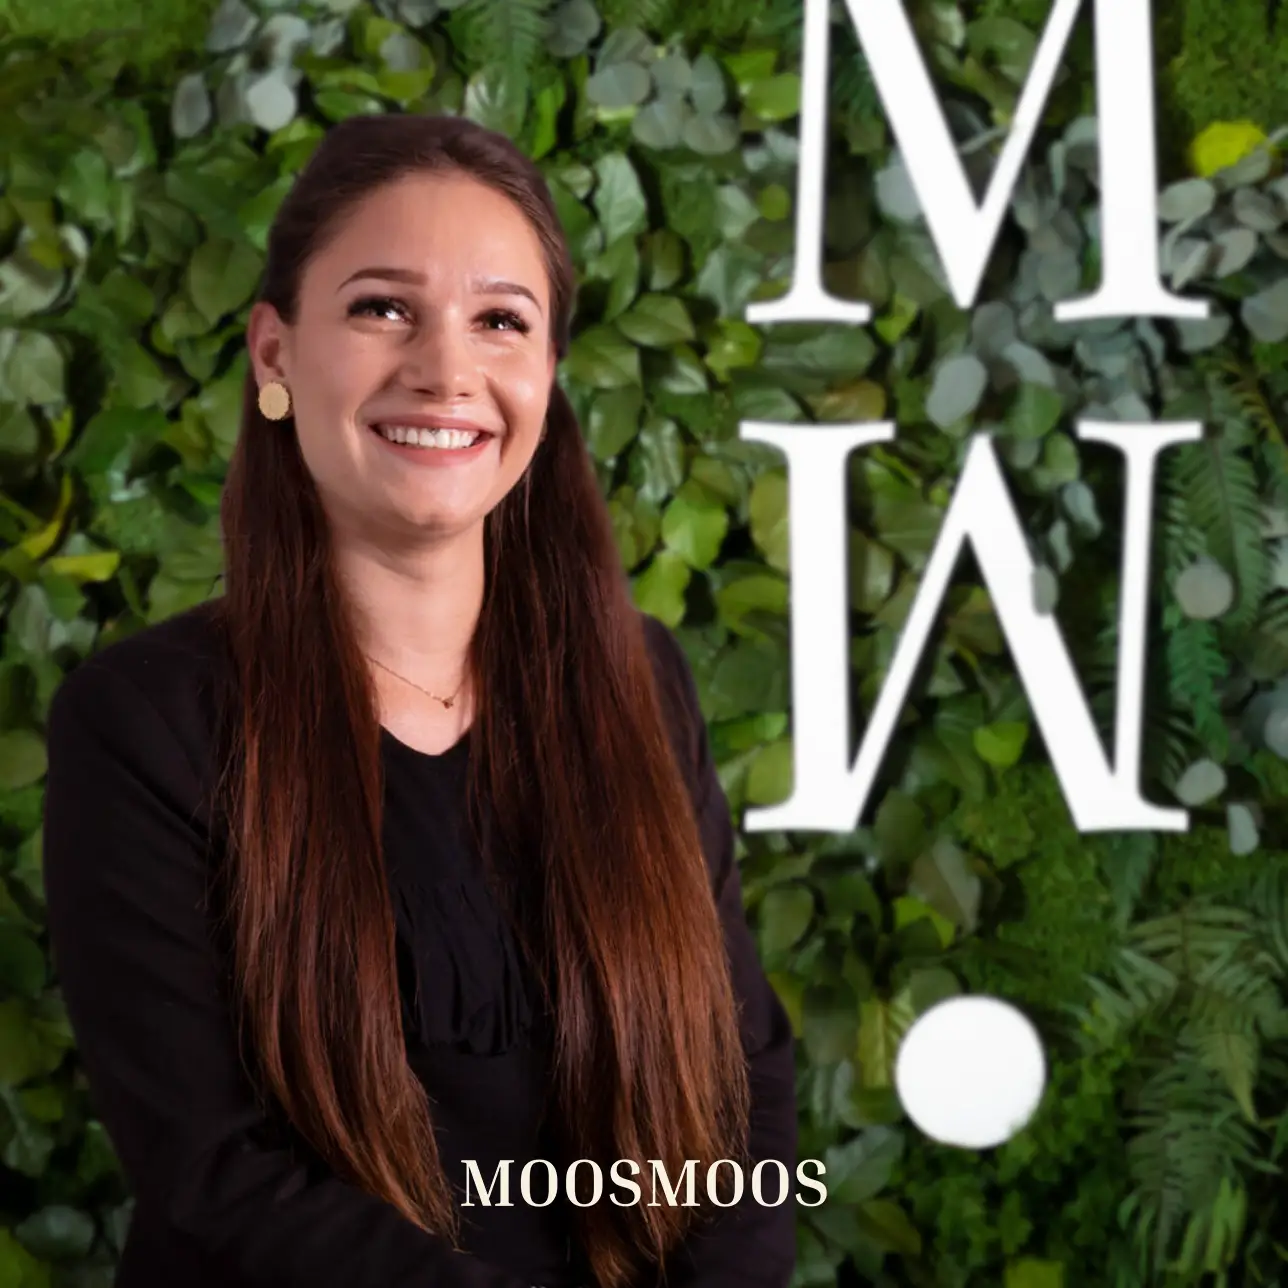 MOOSMOOS Vetrieb & Kundendienst für persönliche Beratung kunden für Mooswände, Moosdecken & Moosbilder & Außenfassadenbegrünung Anna Pannach